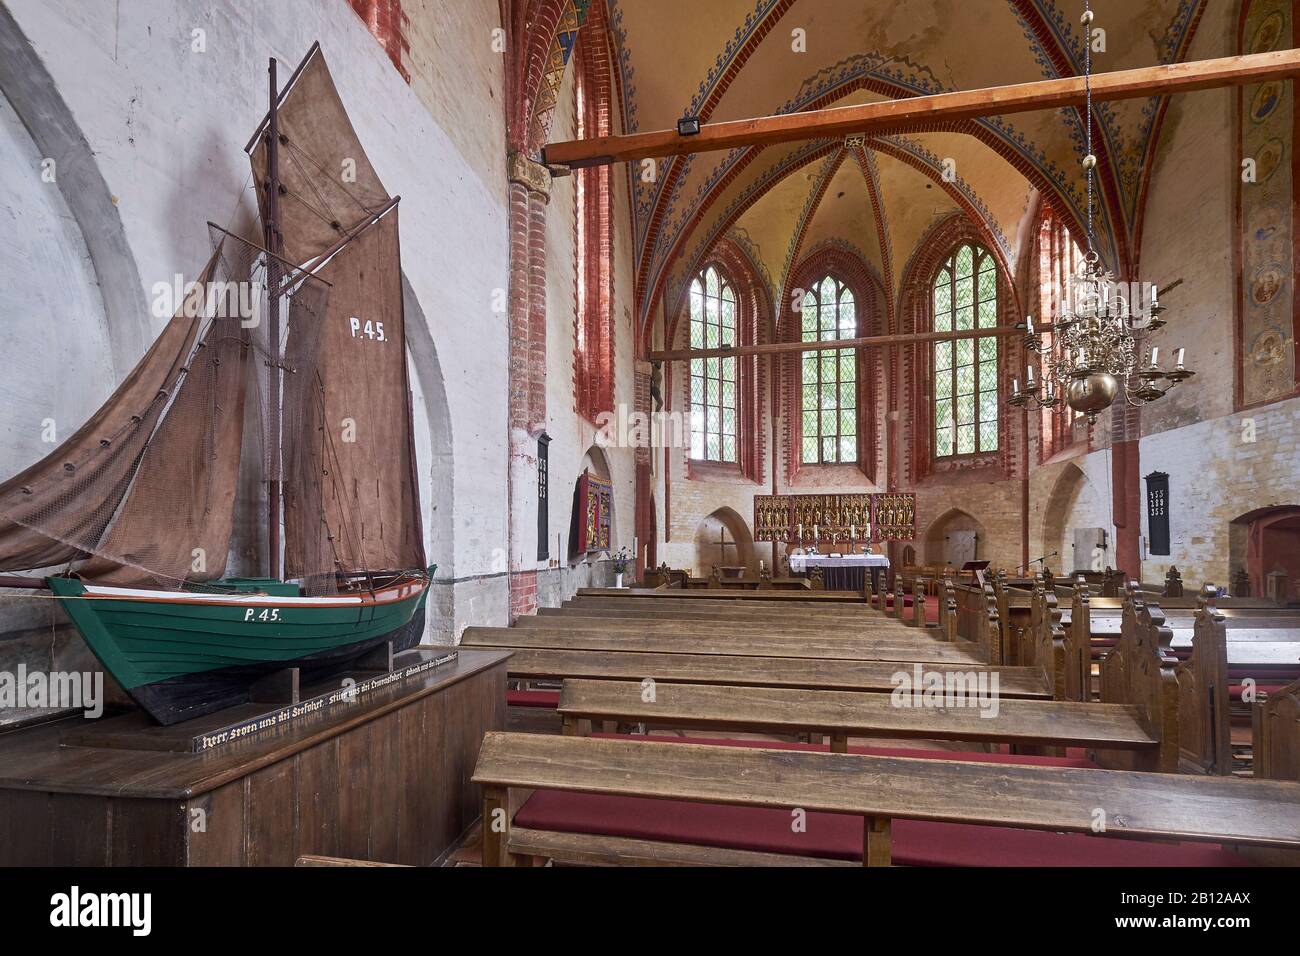 Innenansicht der Kirche mit Klipper in Kirchdorf, Insel Poel, Mecklenburg-Vorpommern, Deutschland Stockfoto